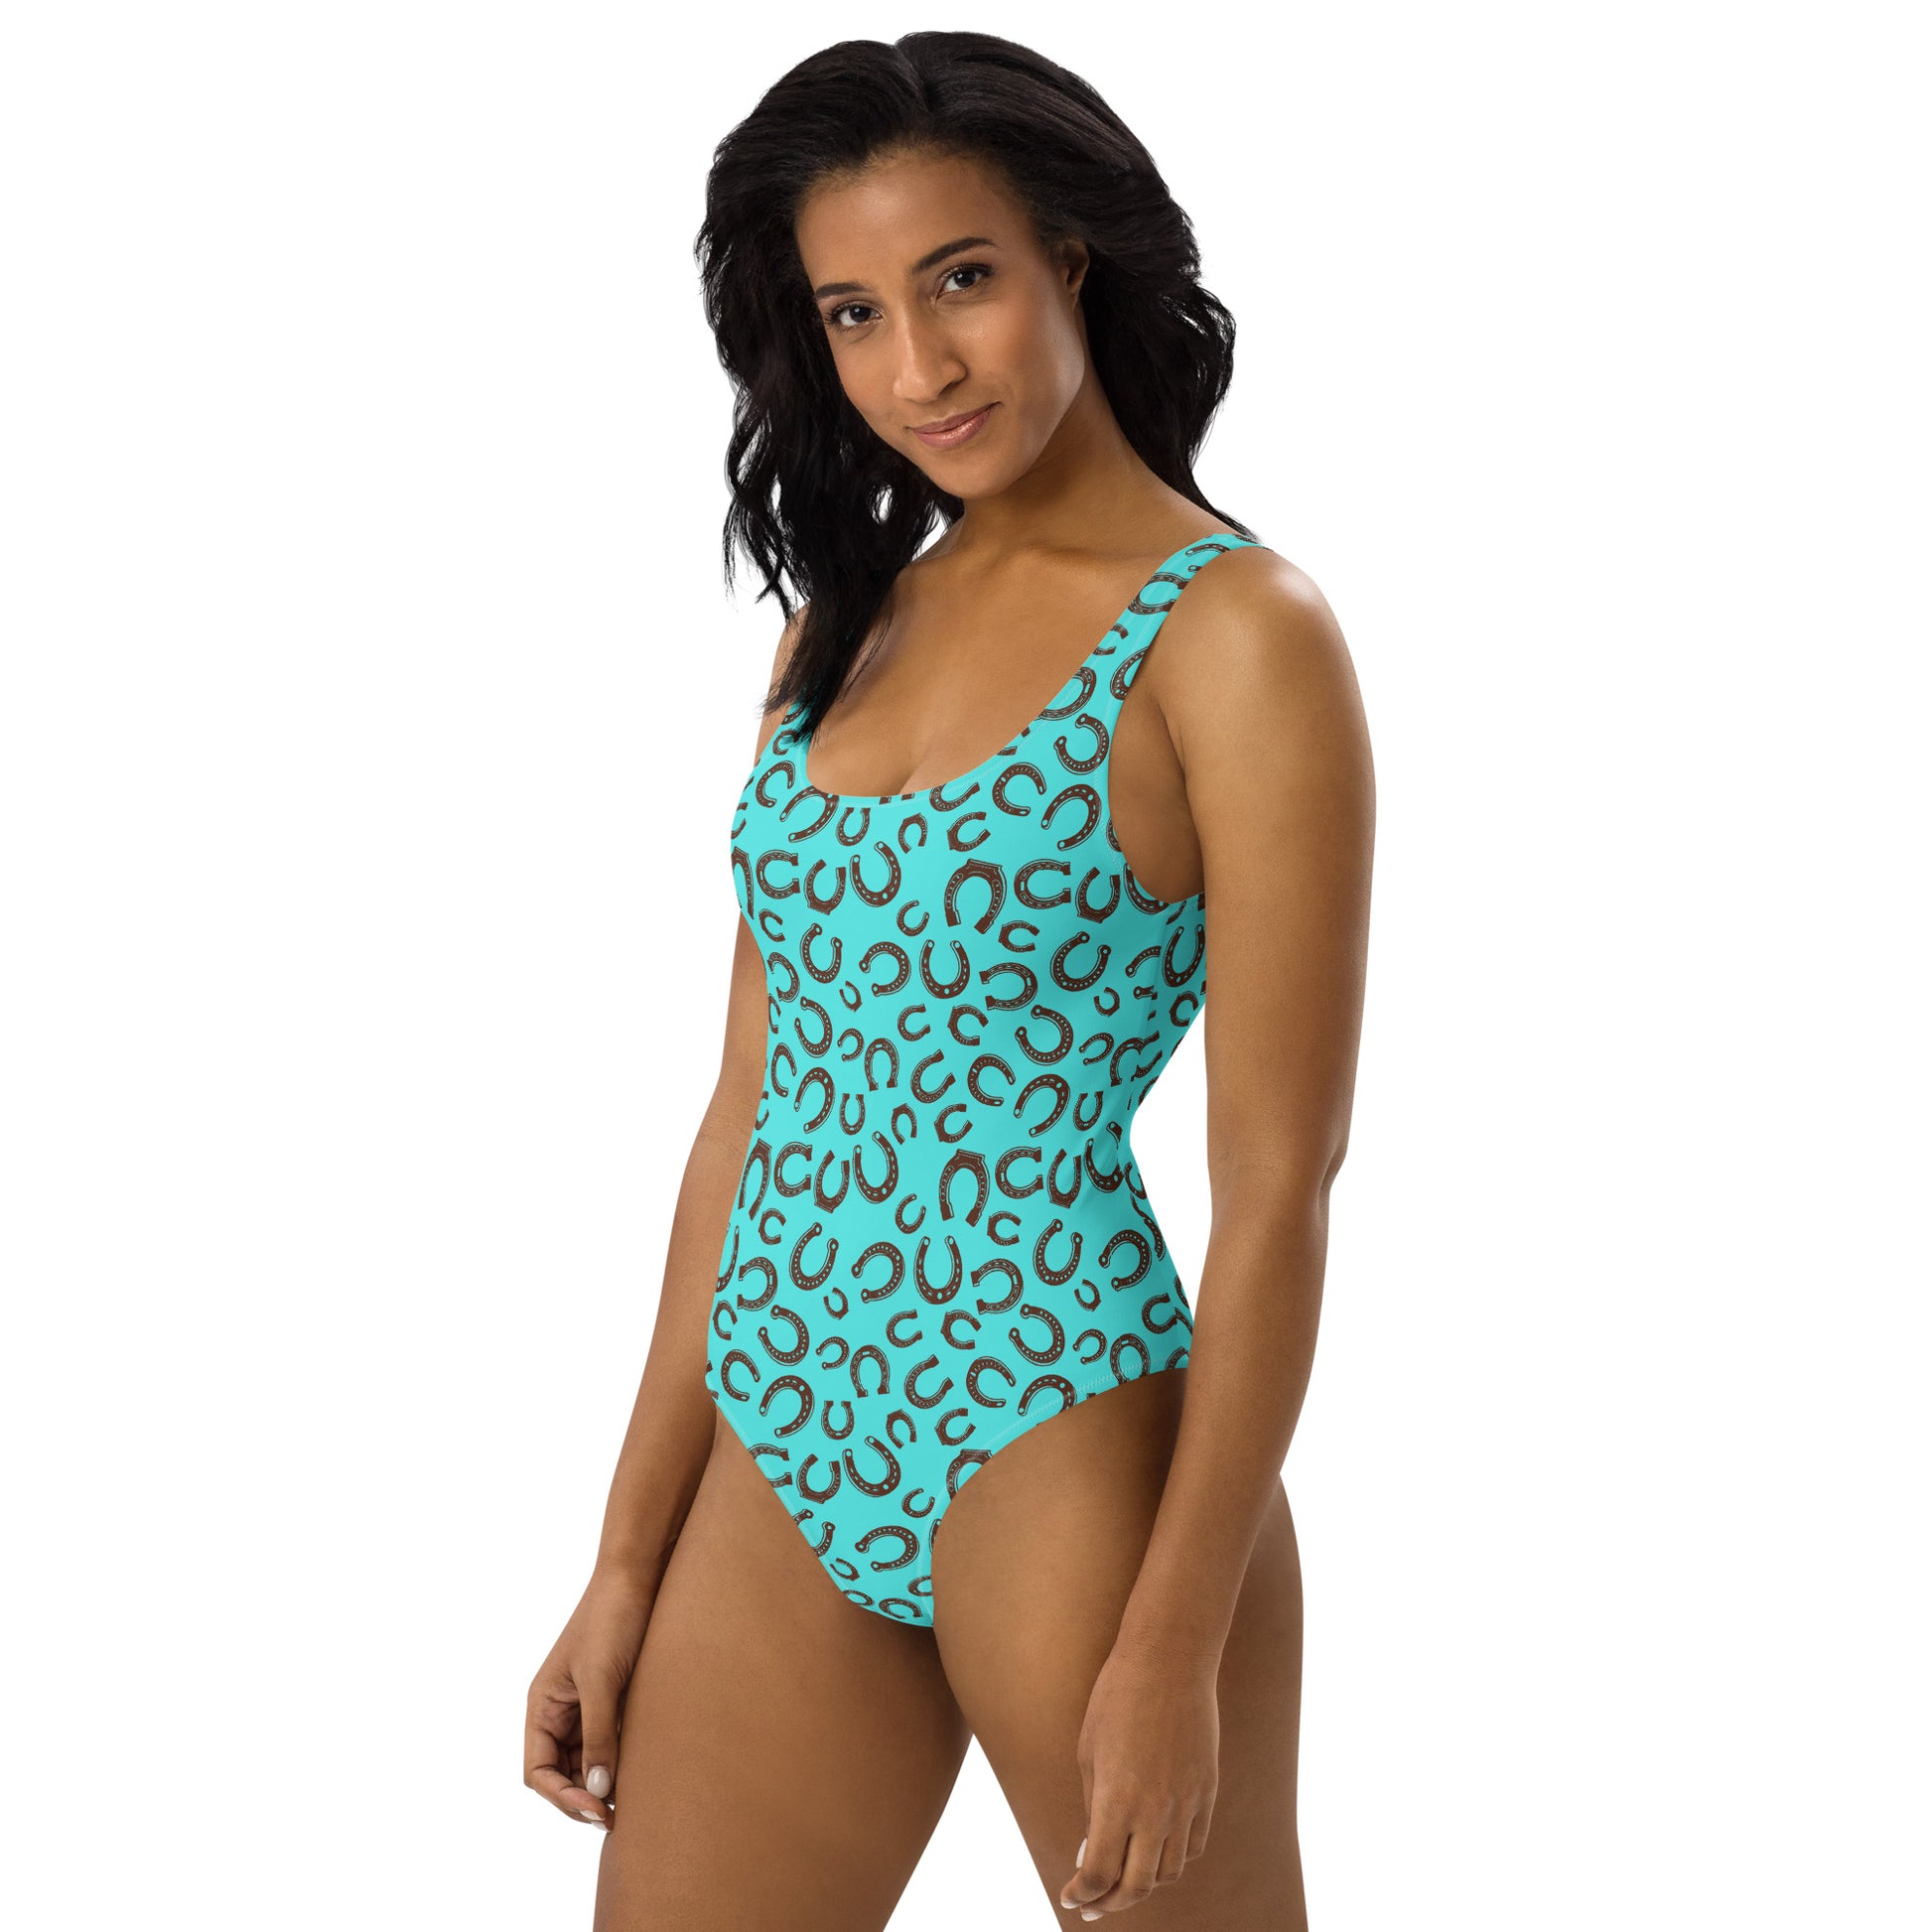 Yeehaw Turquoise Horseshoe One-Piece Swimsuit